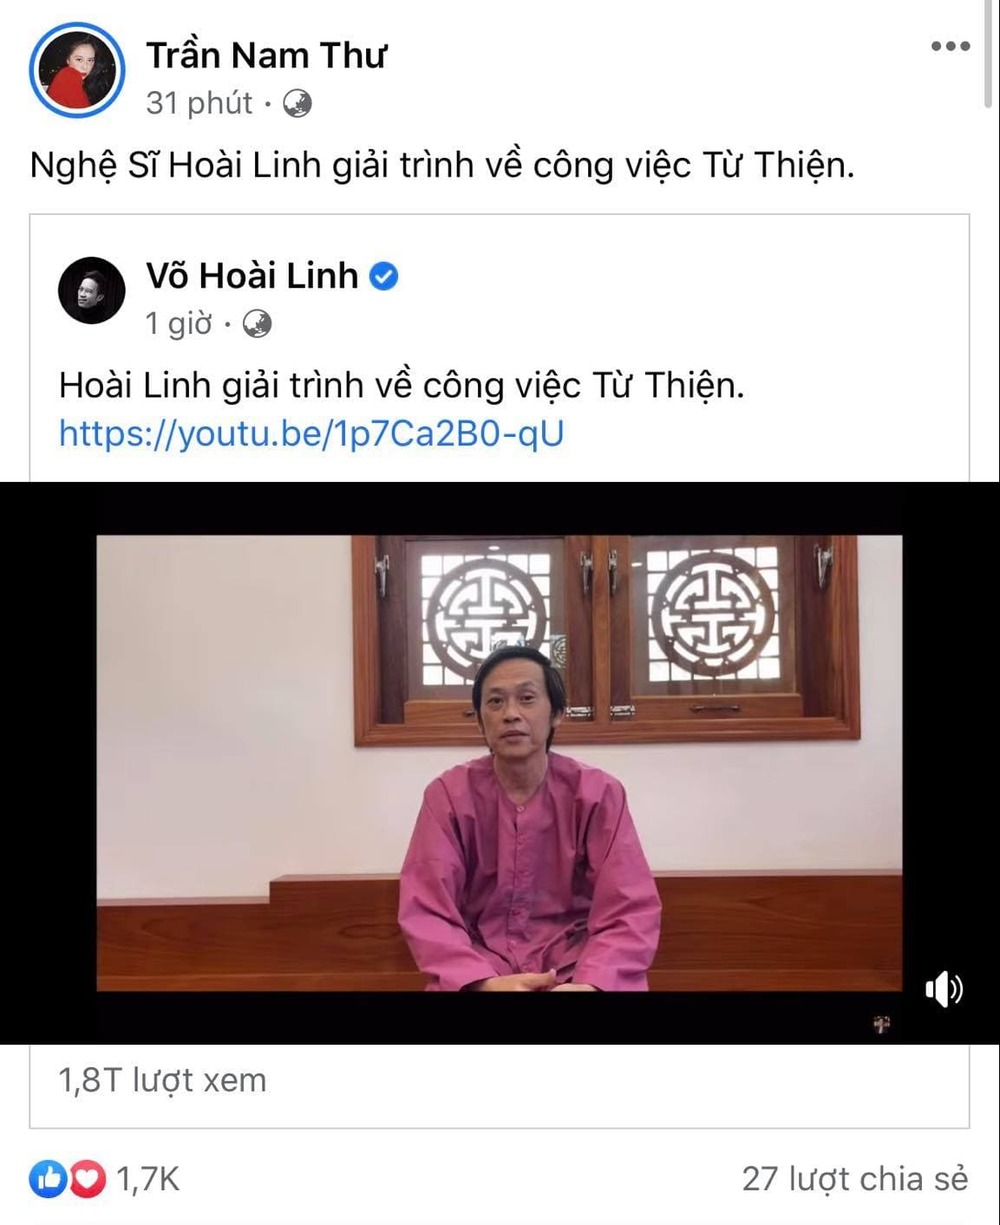  
Nam Thư chia sẻ đoạn video của Hoài Linh về trang cá nhân. (Ảnh: Chụp màn hình)